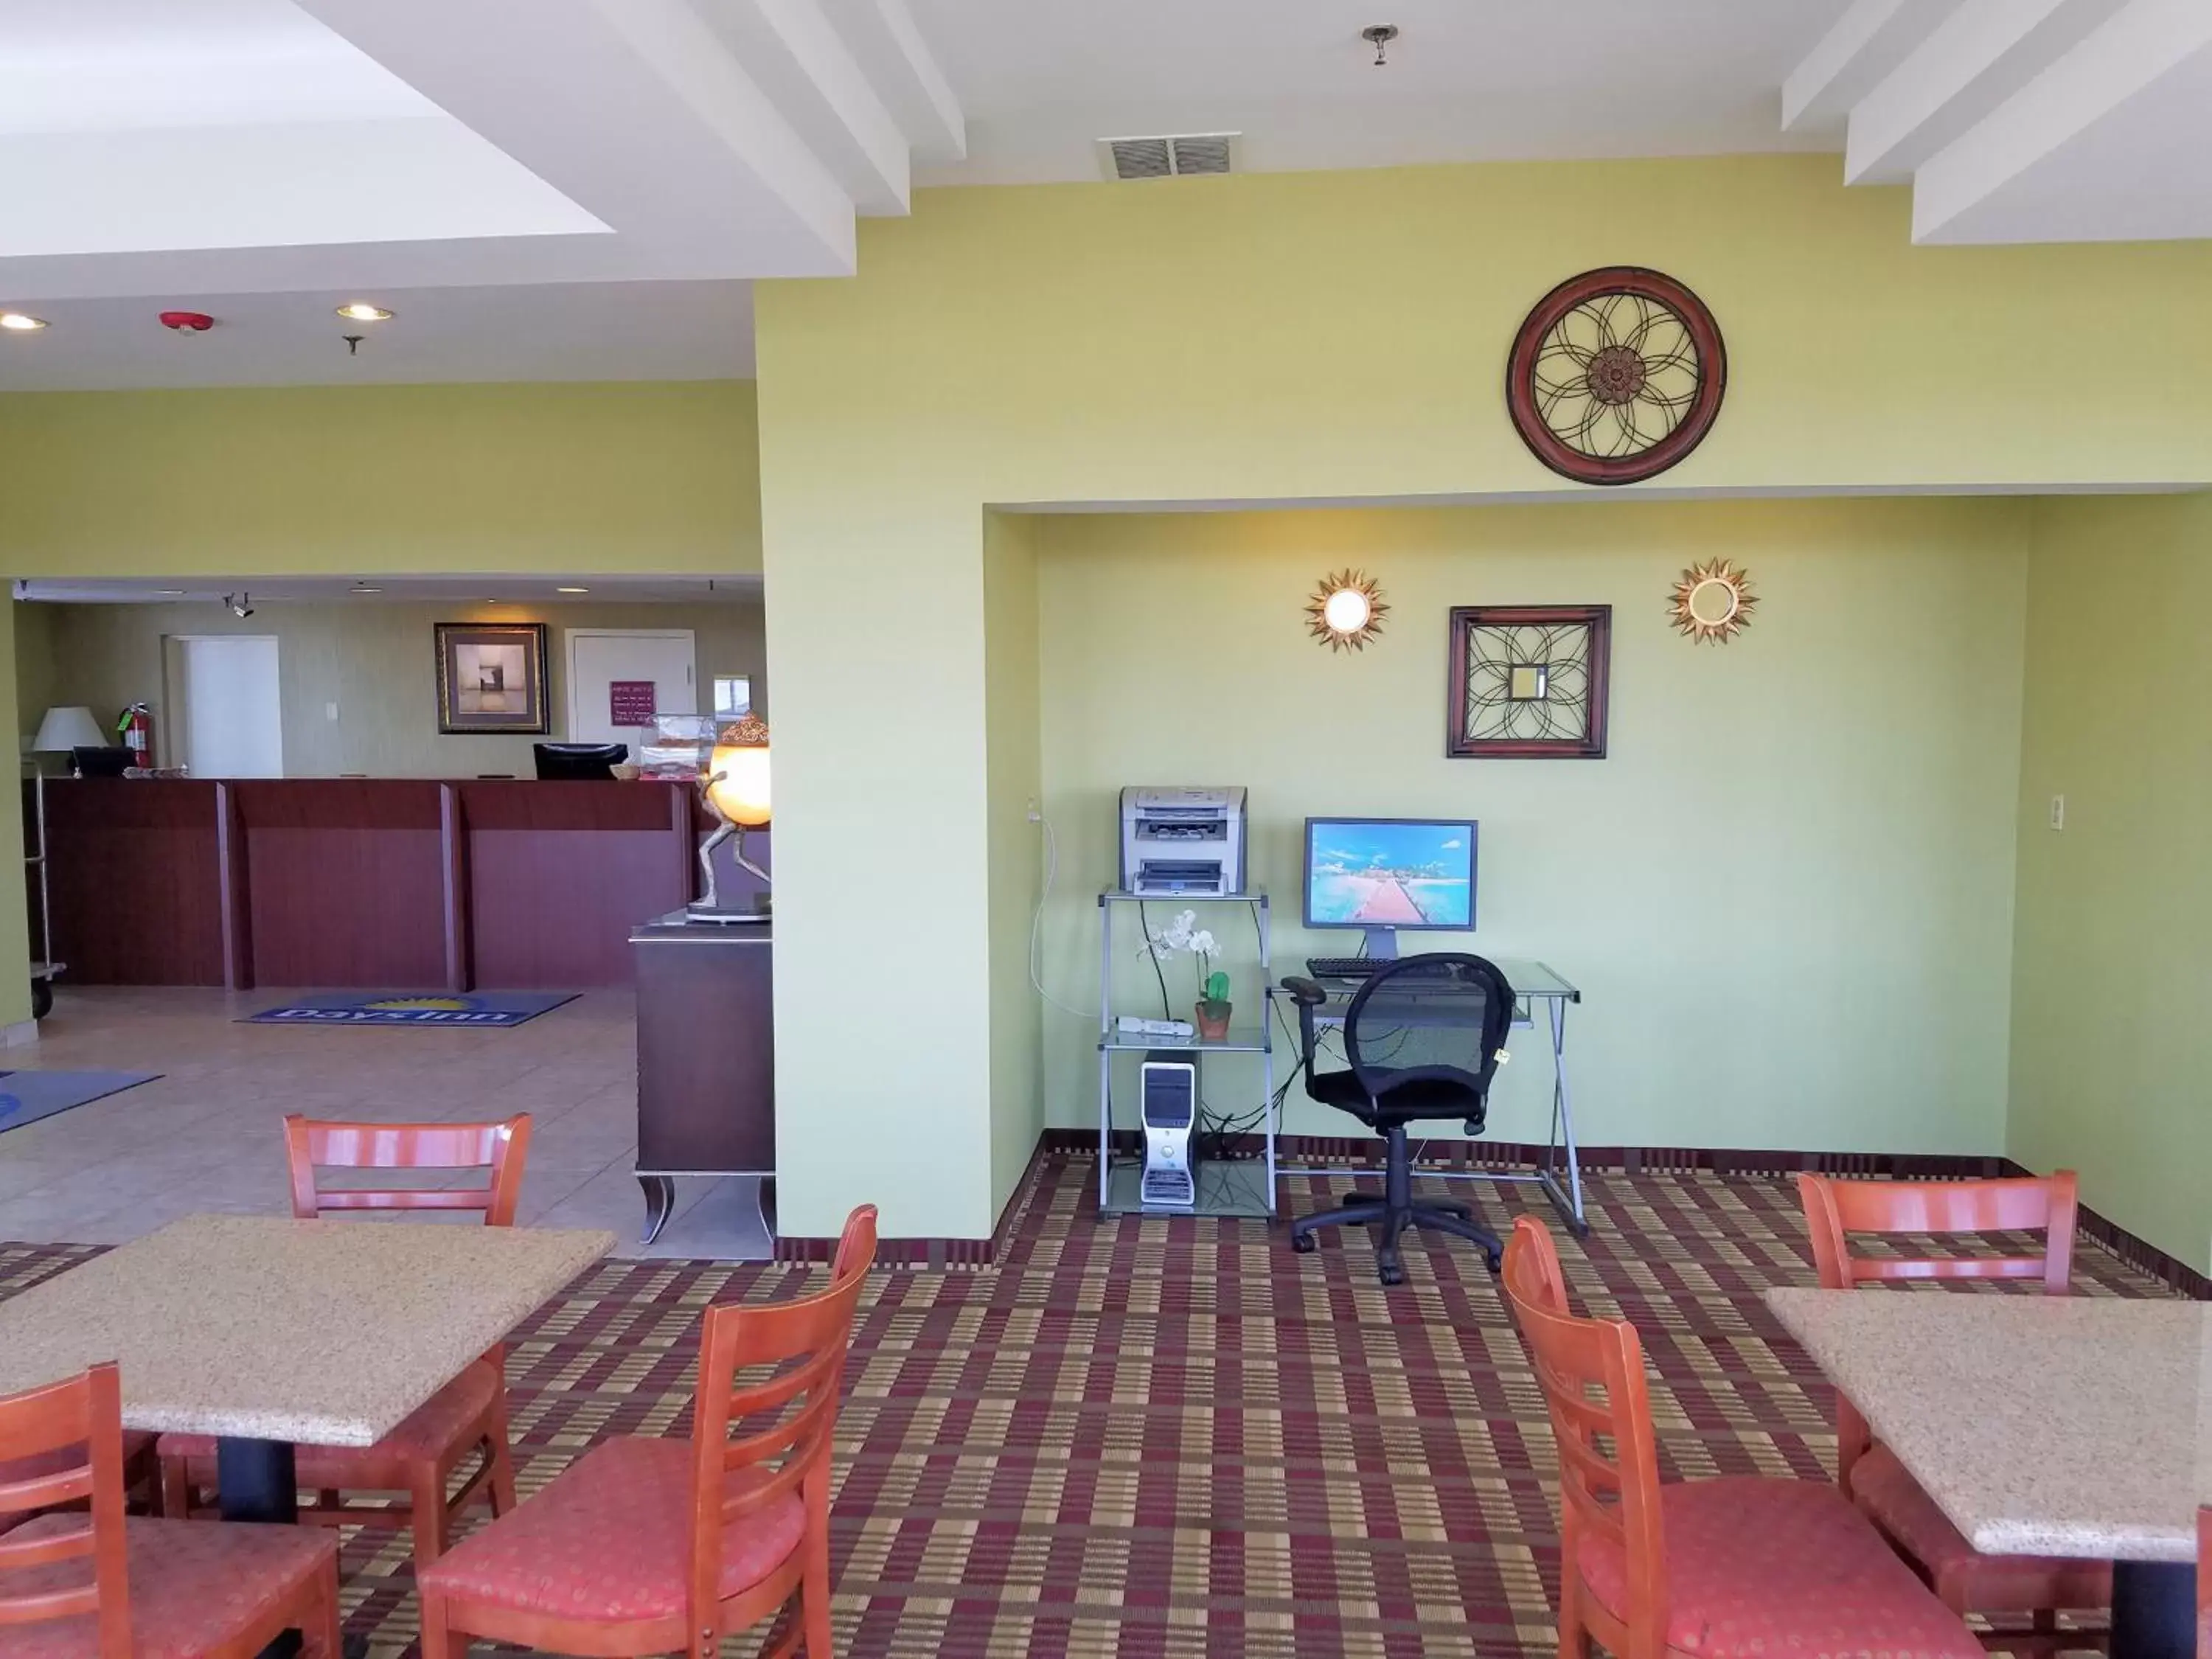 Lobby or reception in Days Inn by Wyndham Windsor Locks / Bradley Intl Airport